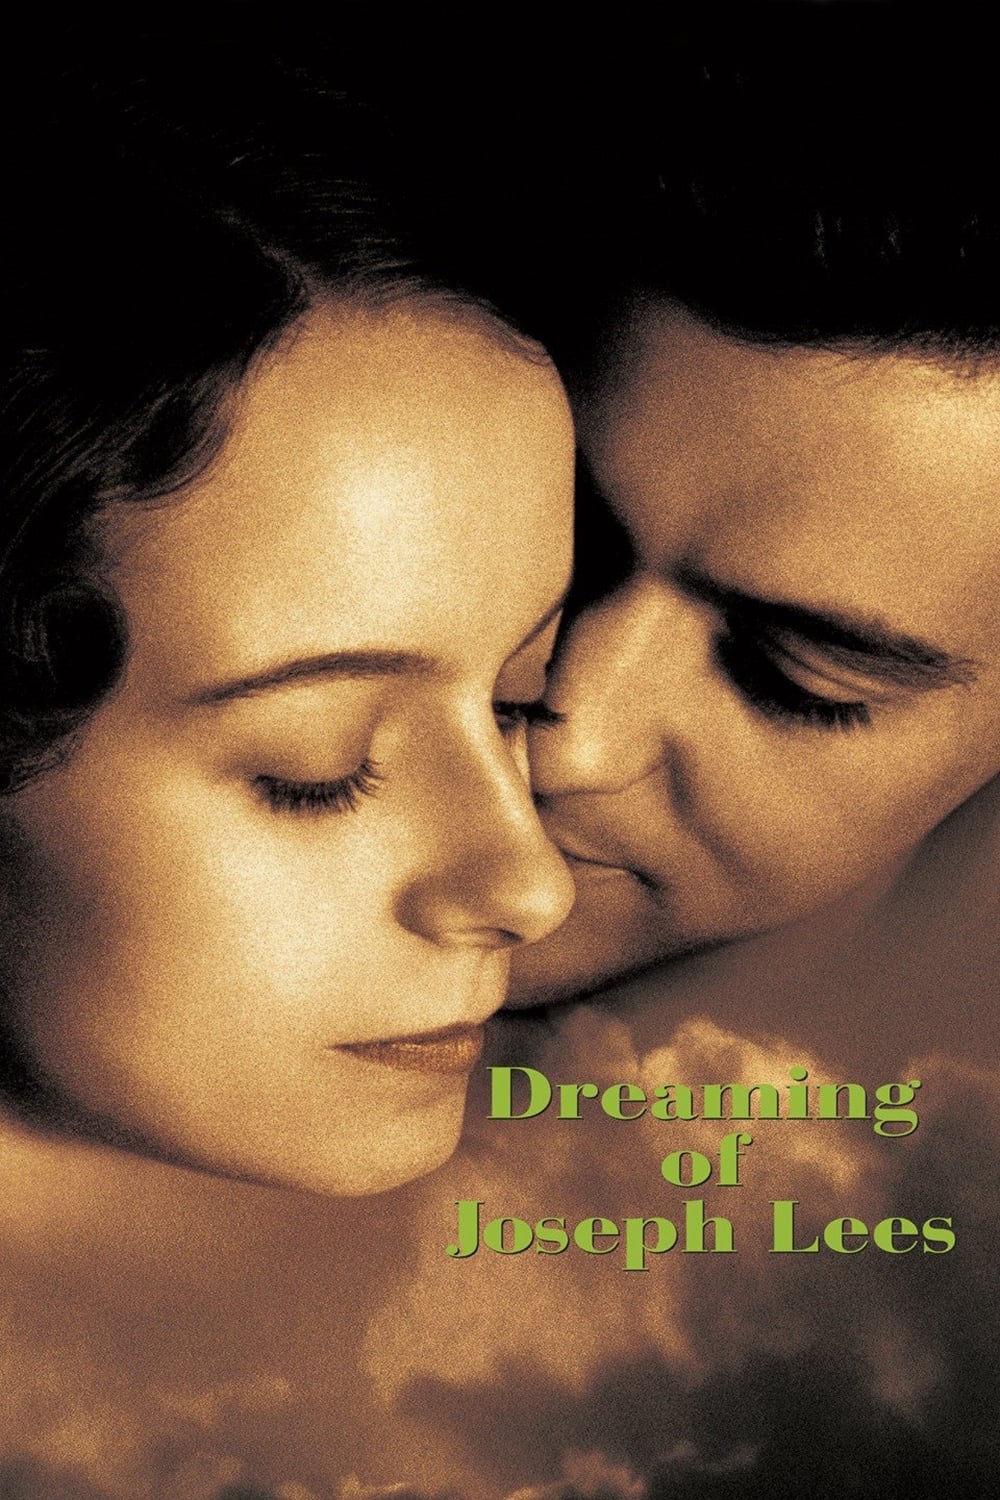 Dreaming of Joseph Lees film